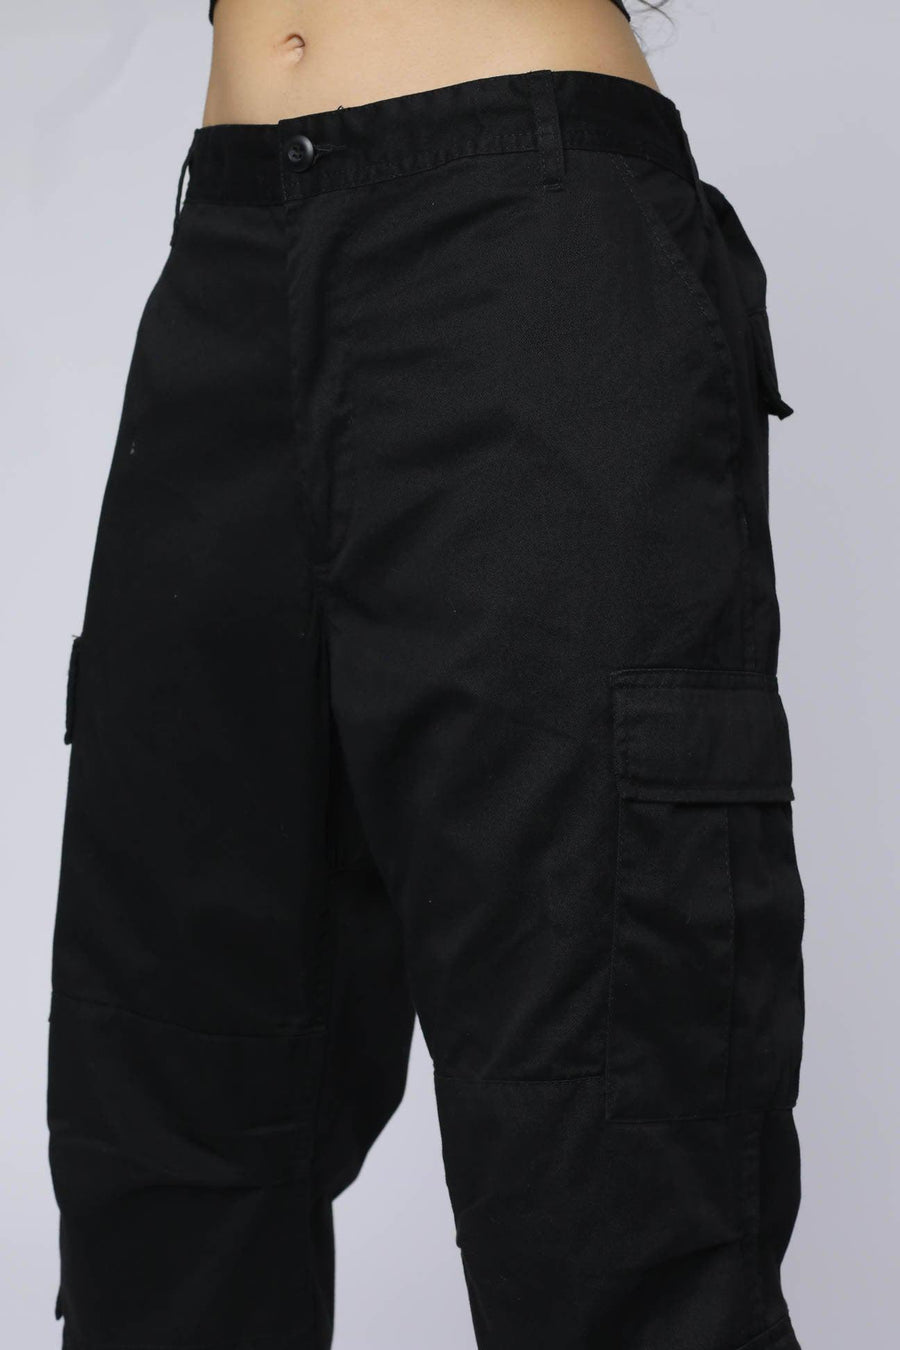 Black BDU Pants - XL